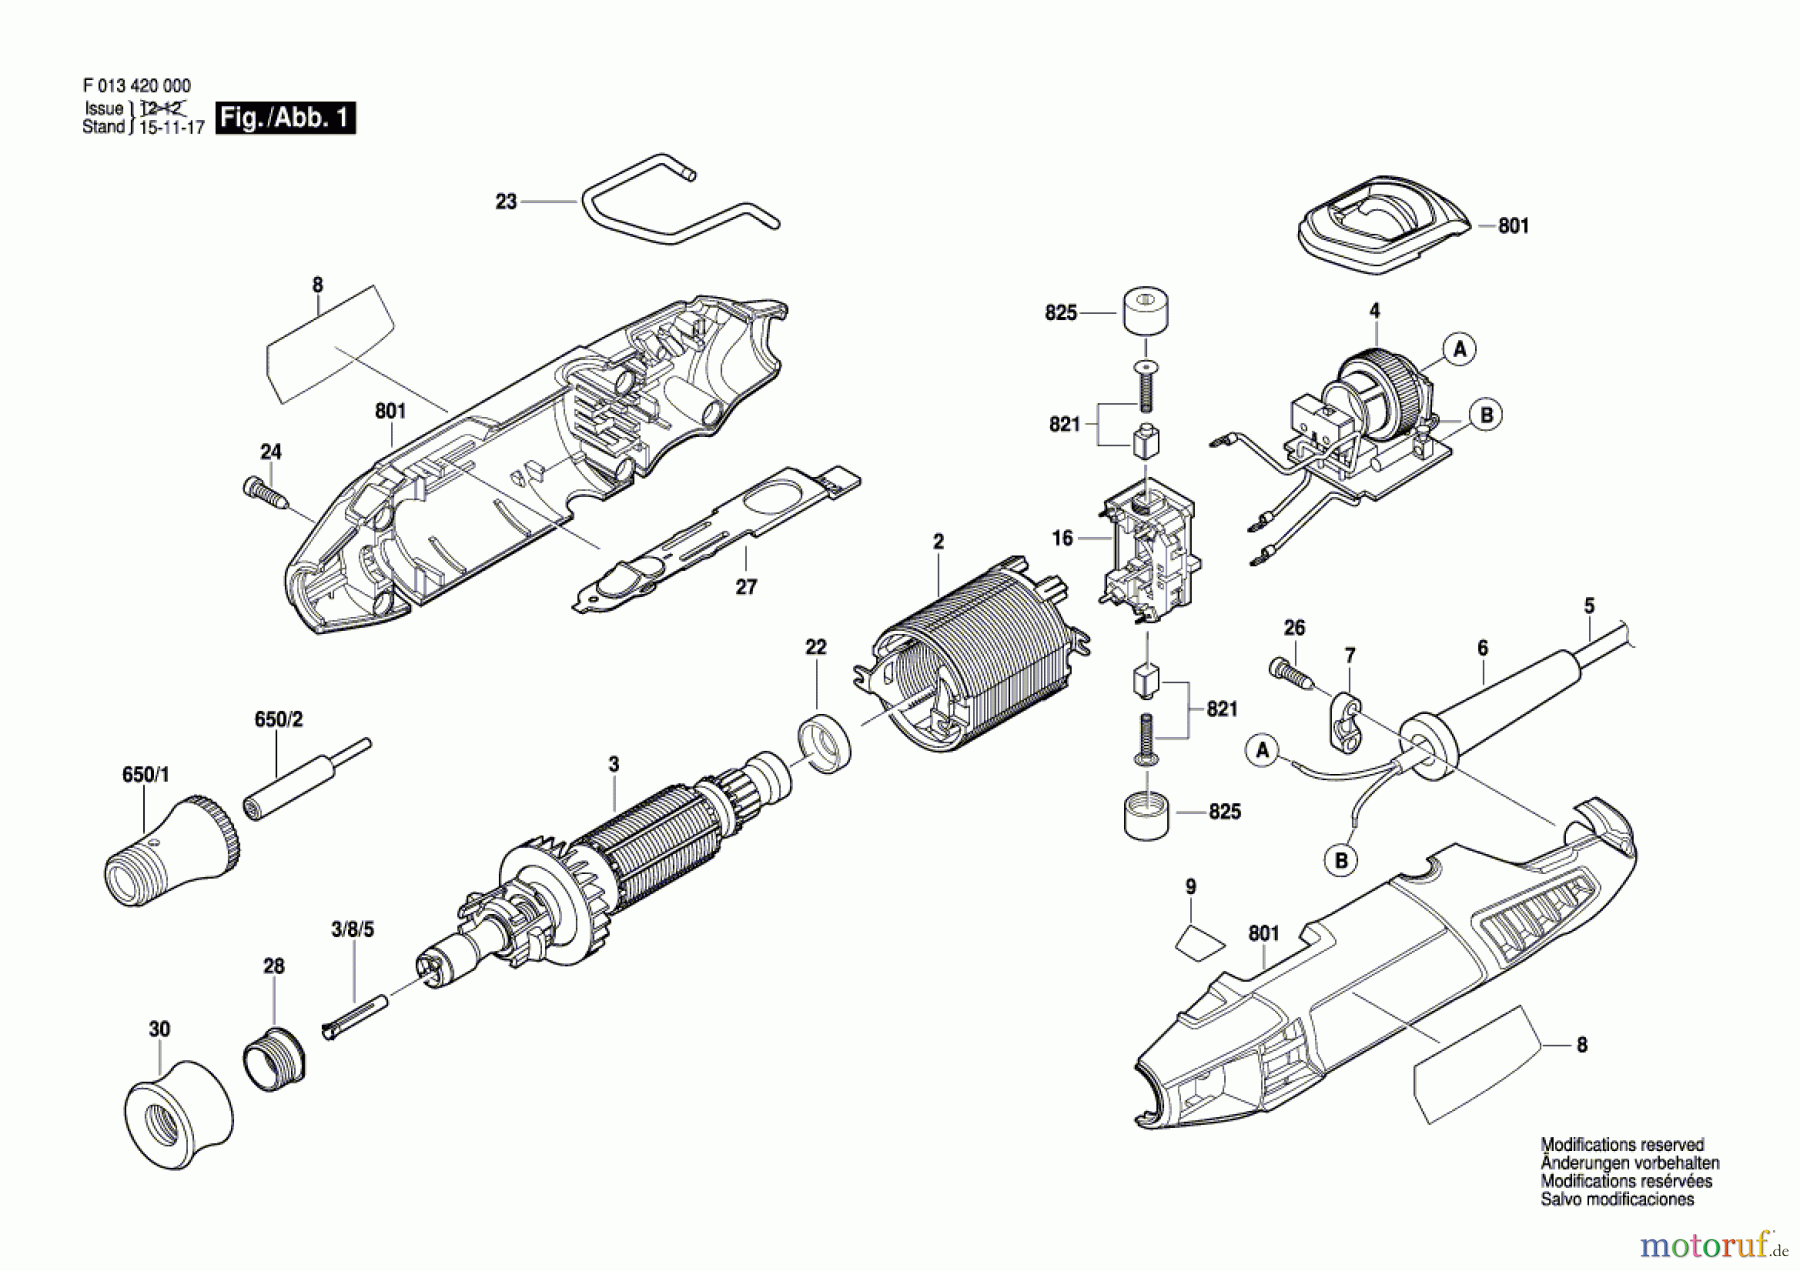  Bosch Werkzeug Drehwerkzeug 4200 Seite 1